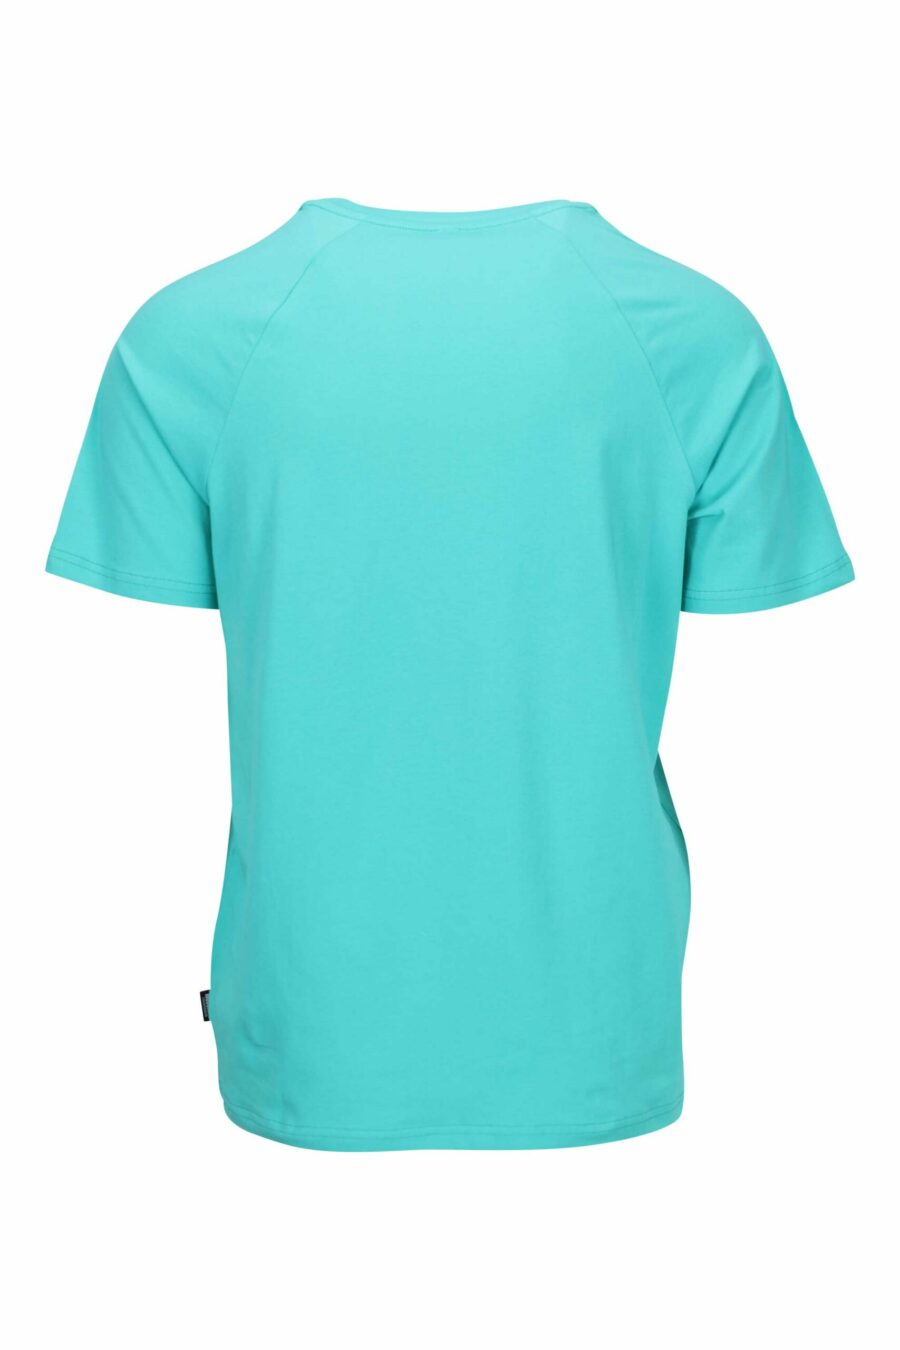 Aquamarine blue T-shirt with bear logo "underbear" on shoulder band - 667113602400 1 scaled